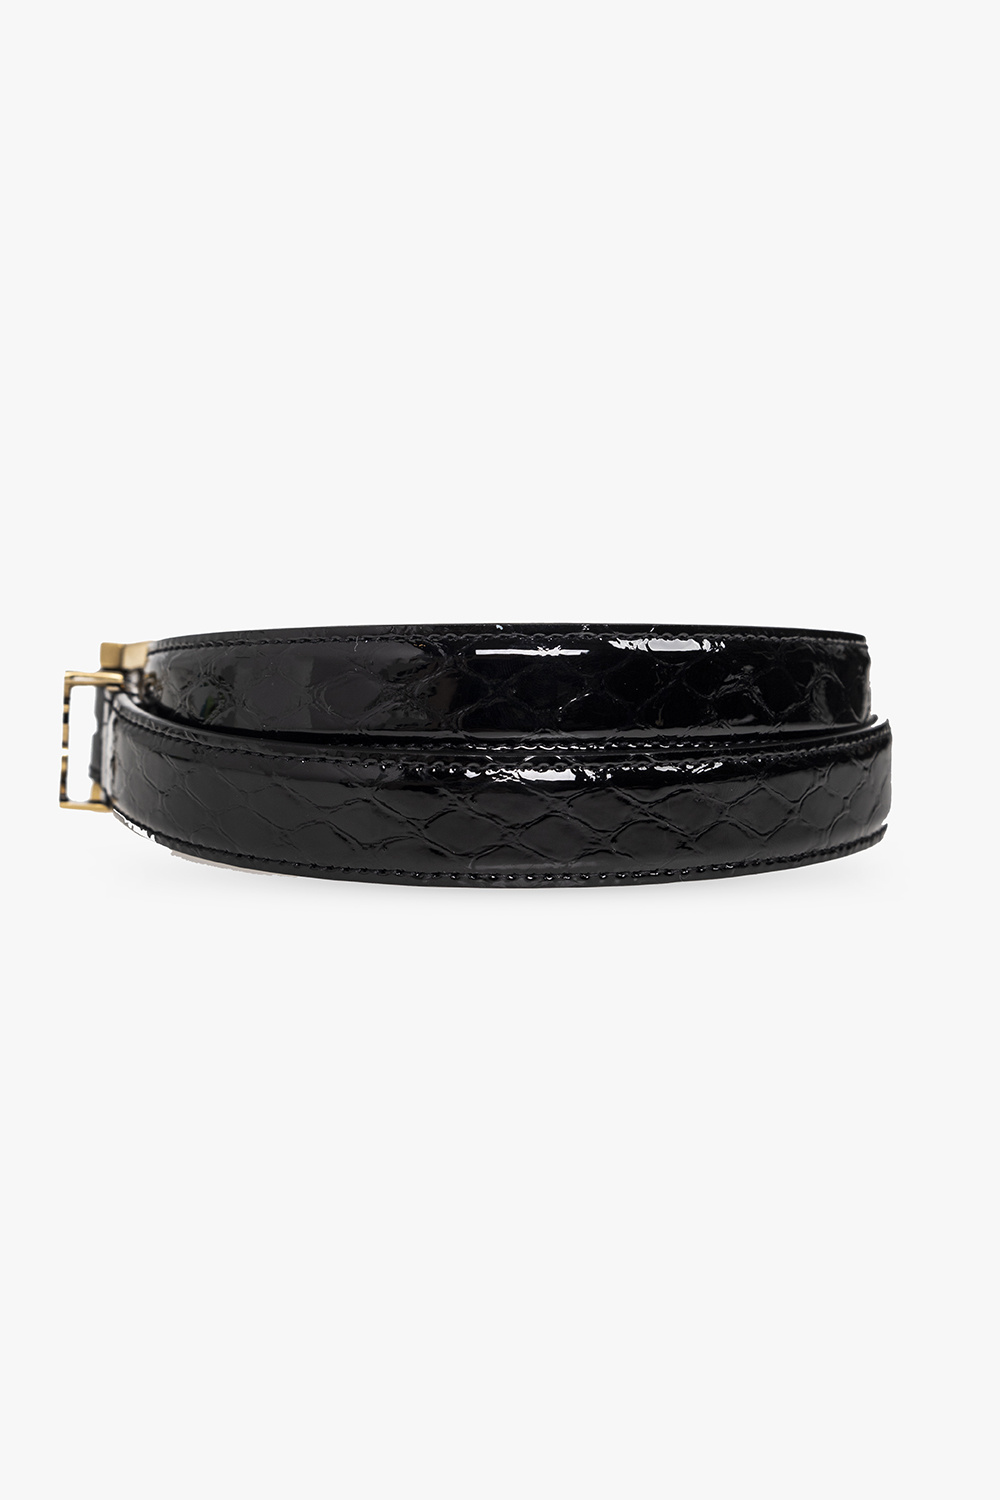 Saint Laurent Leather belt